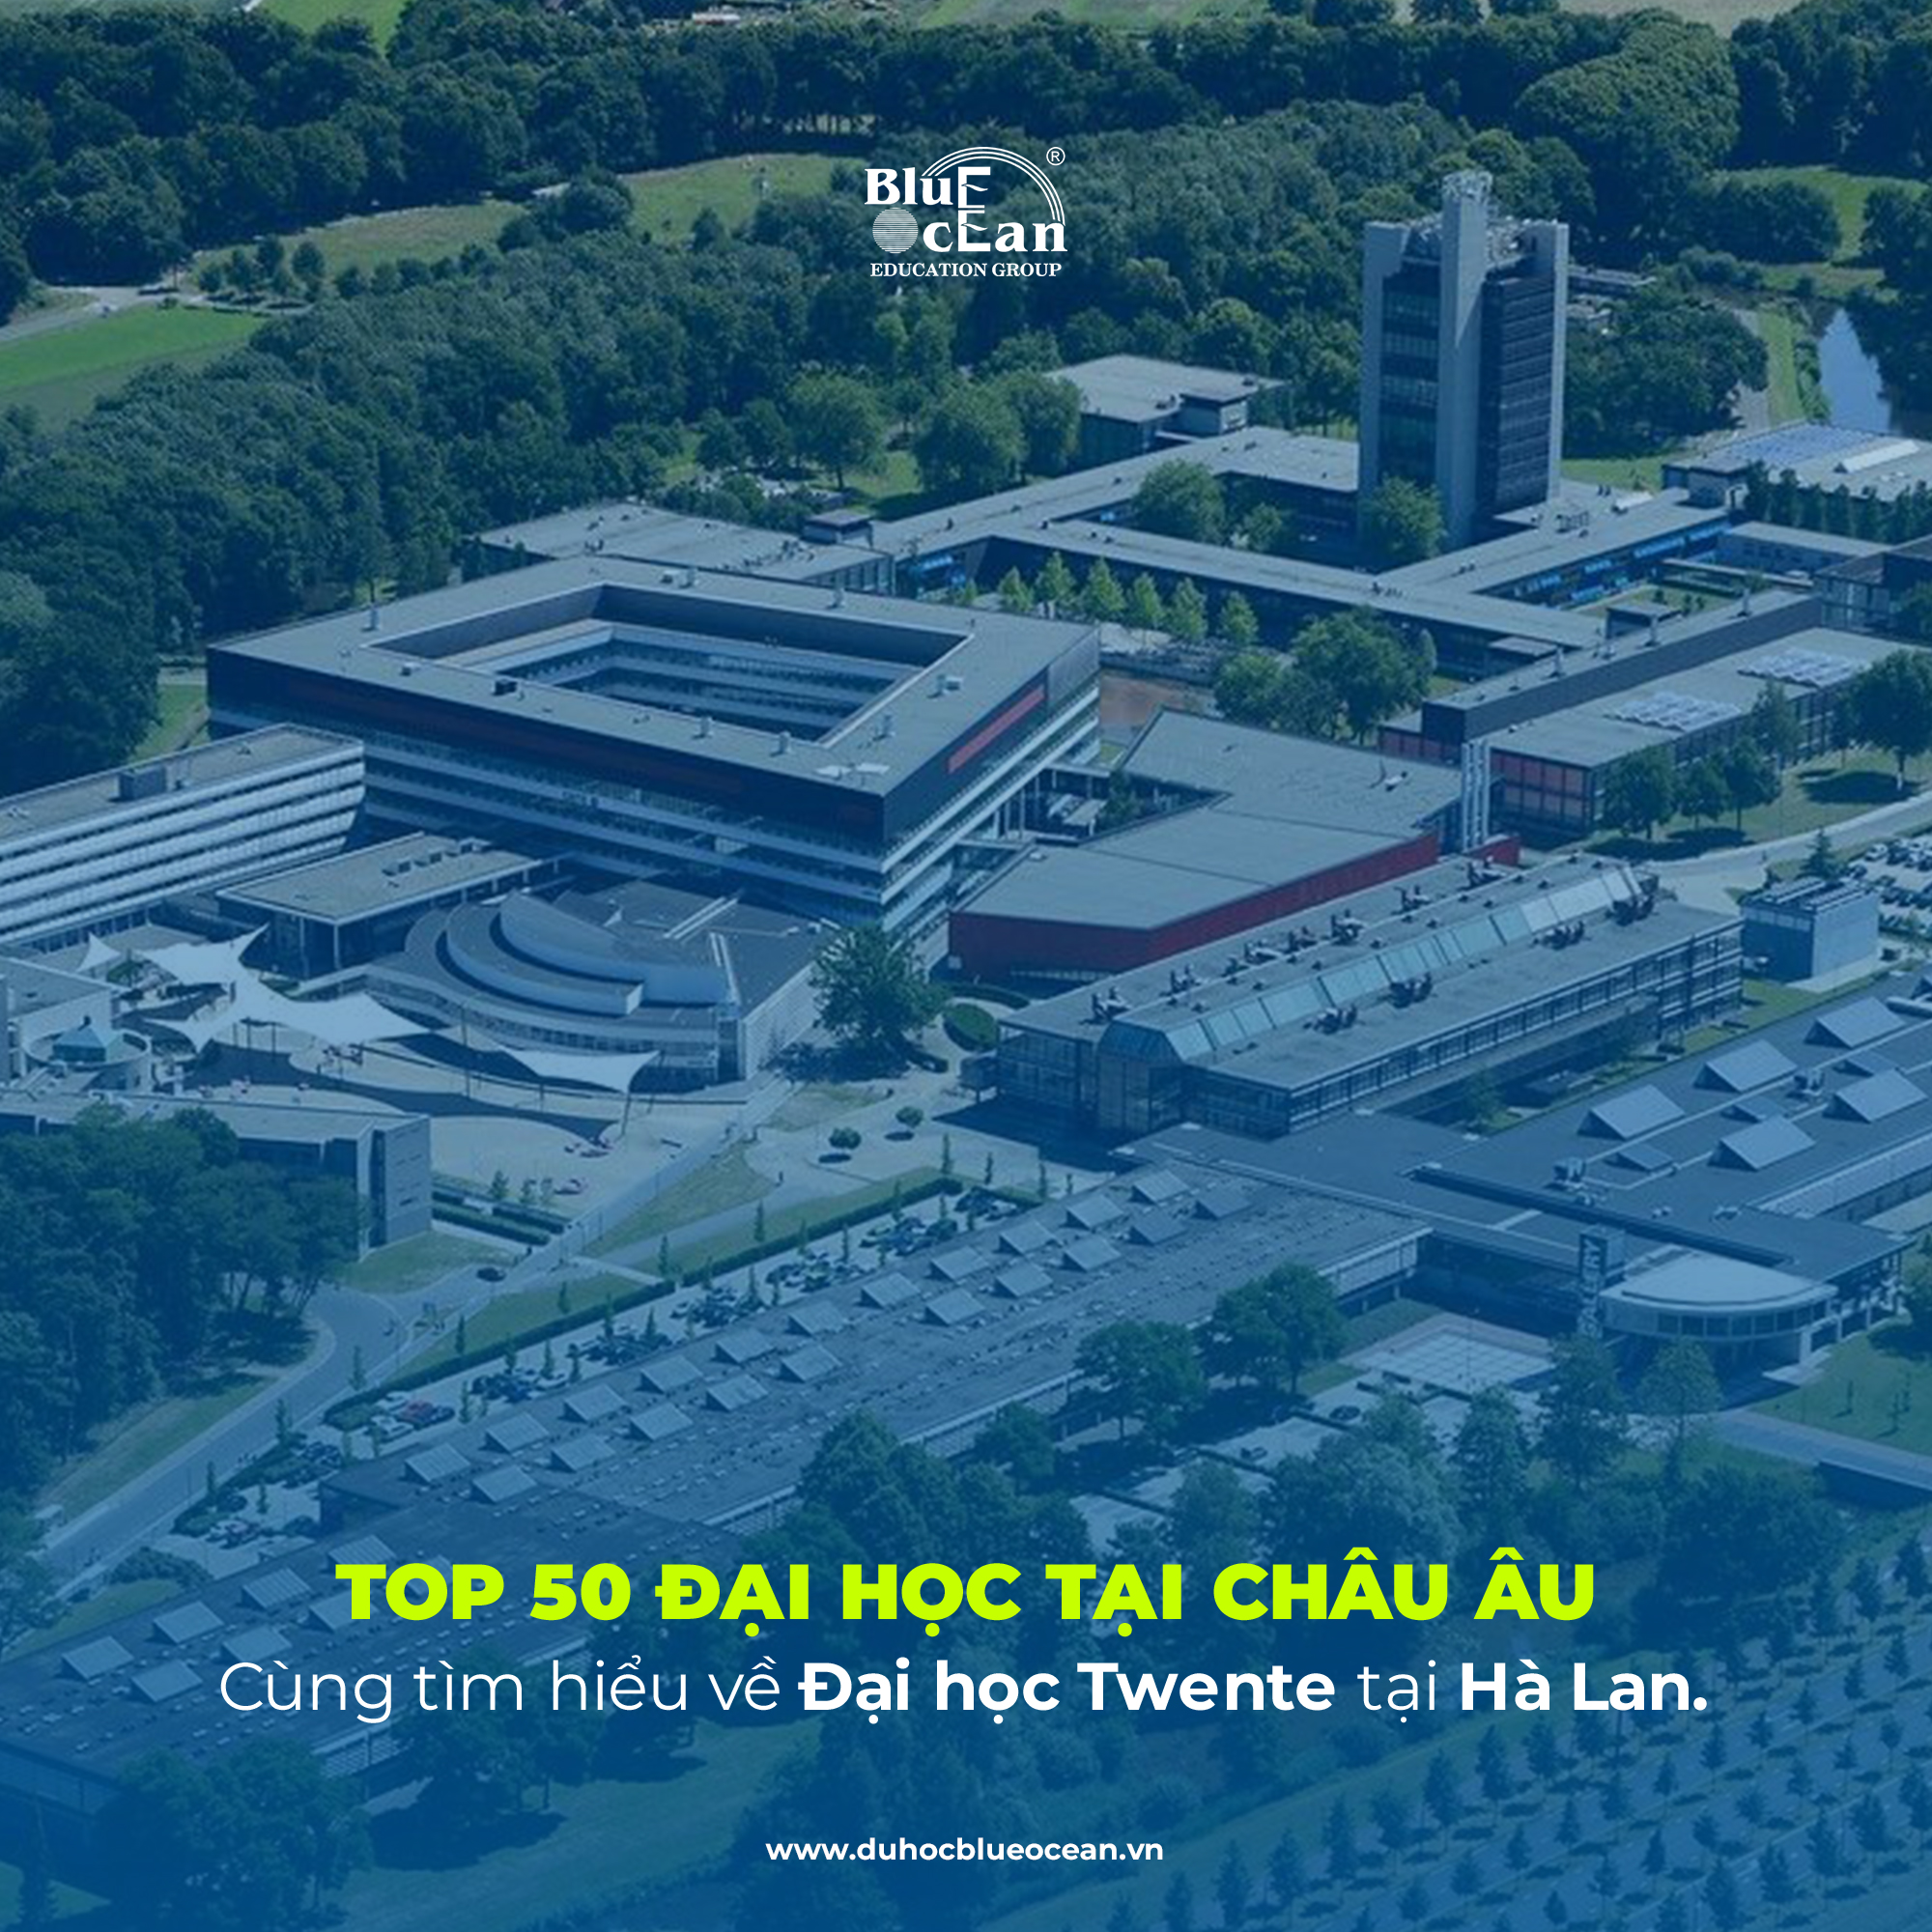 Cùng tìm hiểu Đại học Twente Hà Lan - Top 50 Đại học châu Âu